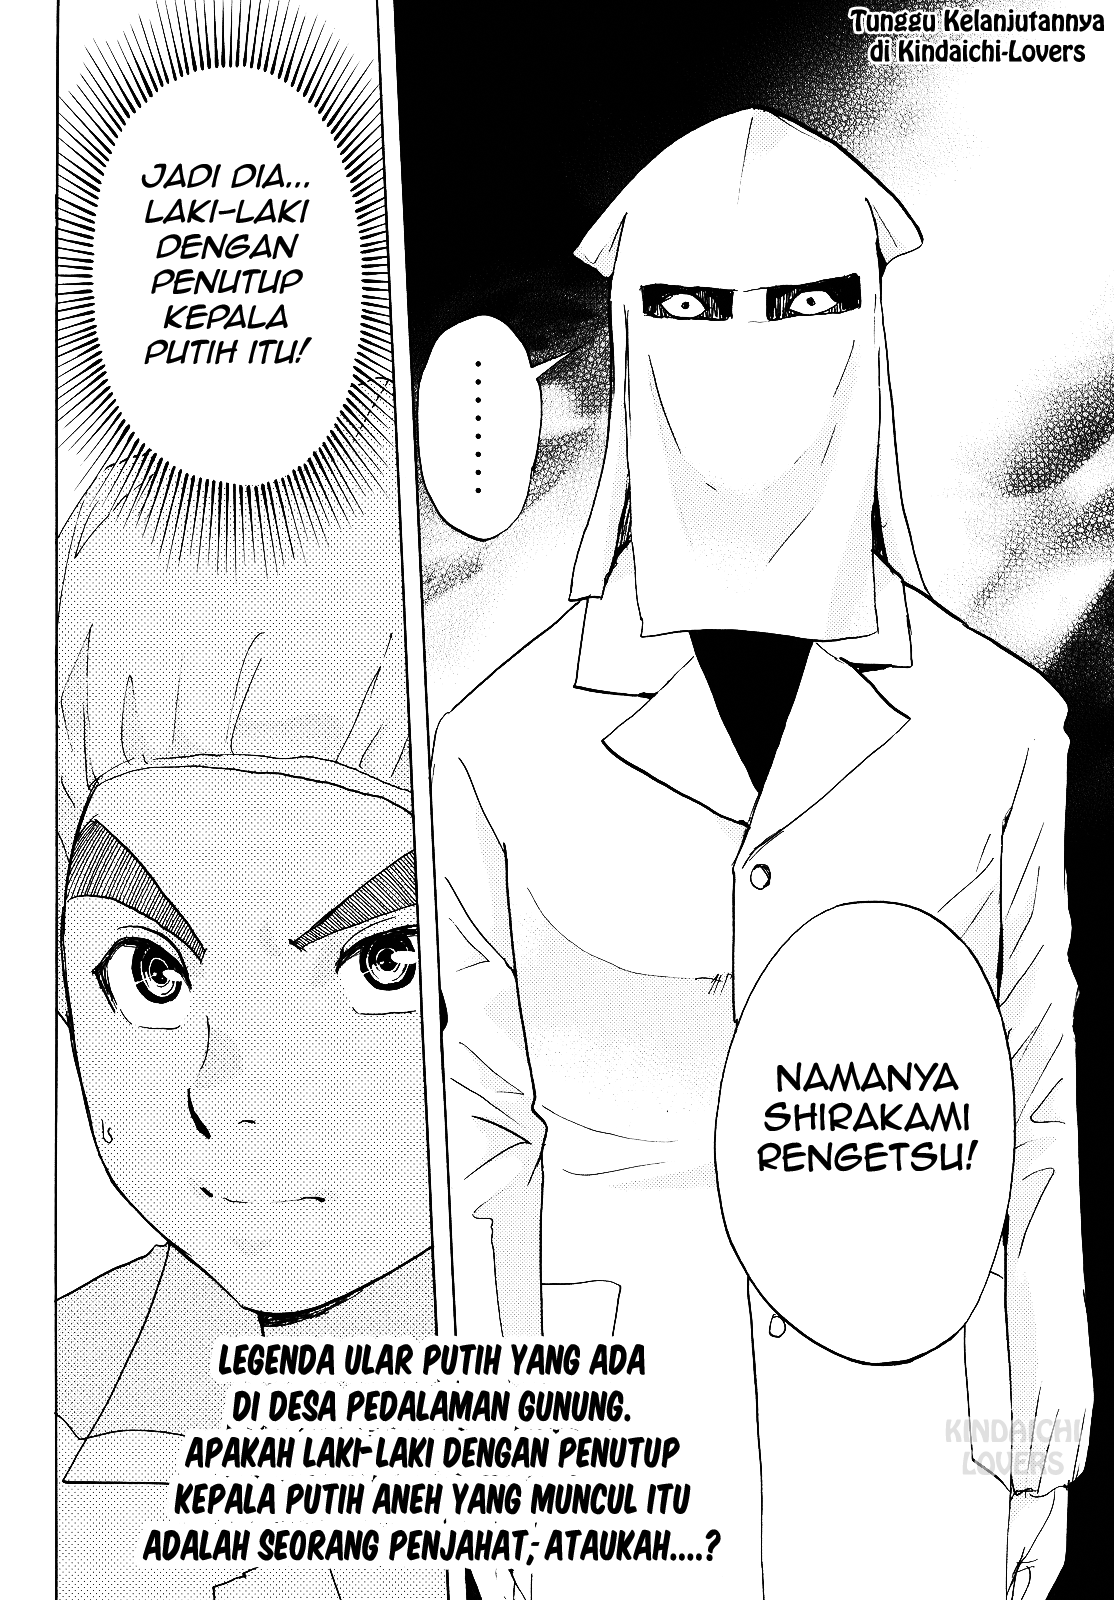 Kindaichi Shounen no Jikenbo R Chapter 87